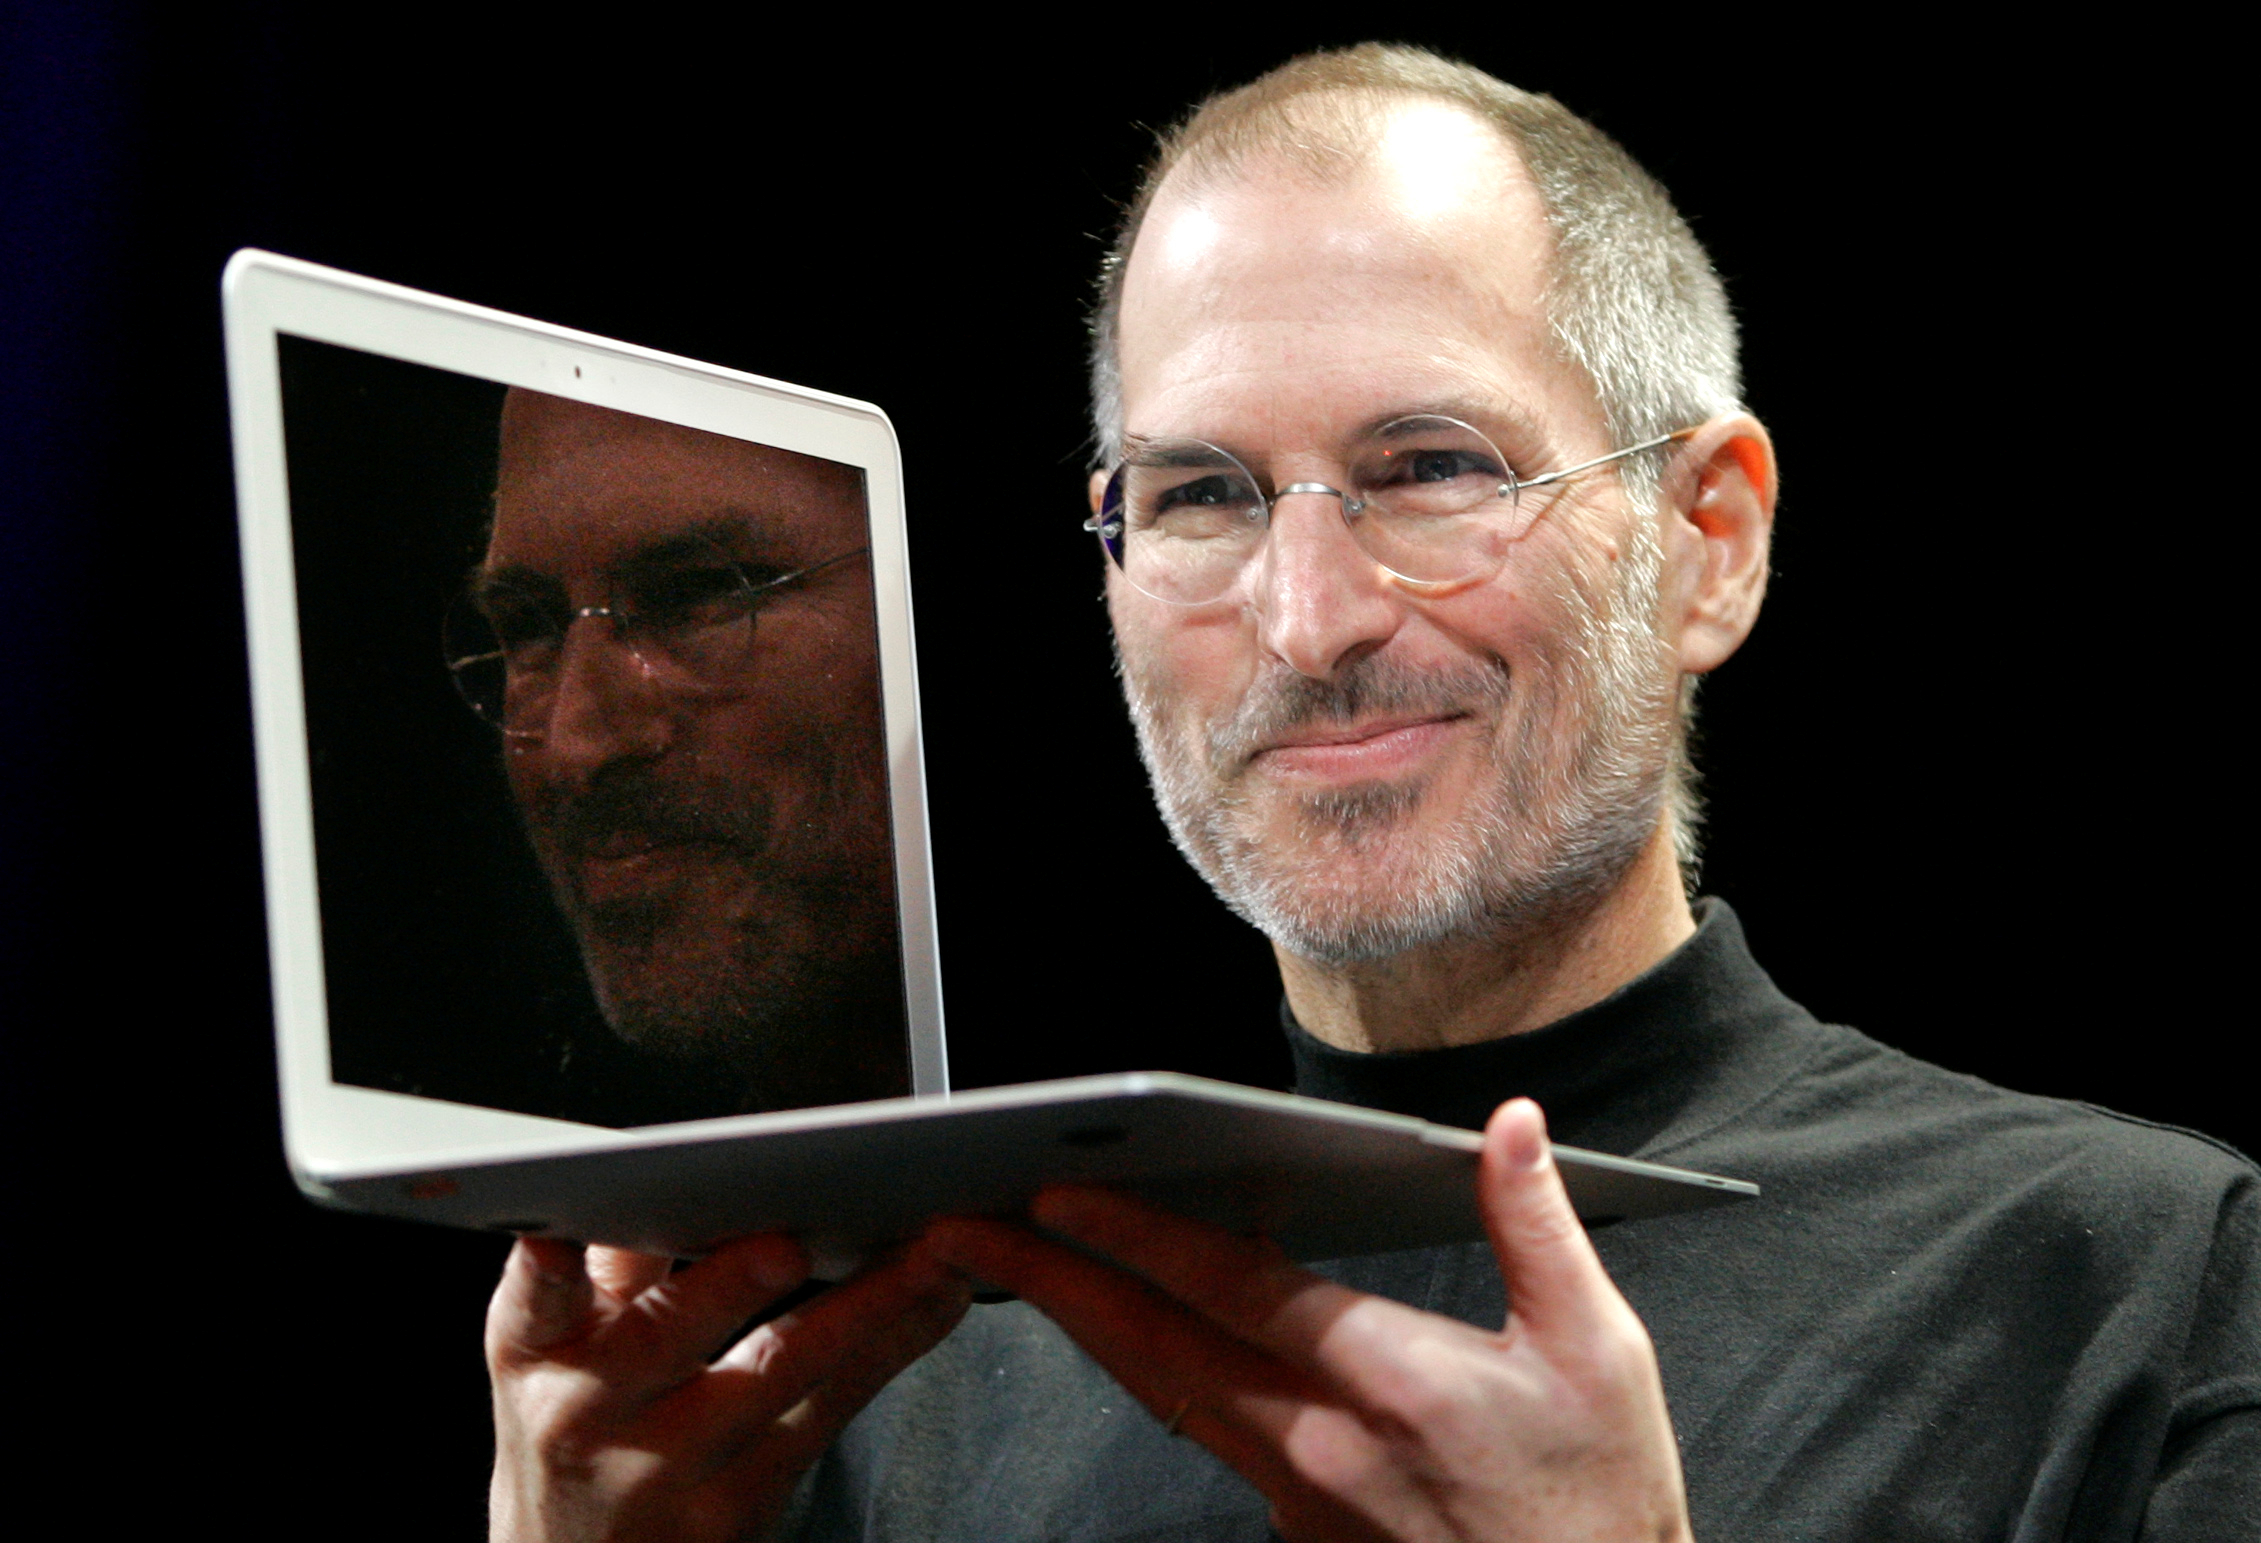 Apples grundare Steve Jobs gick bort natten till torsdagen.